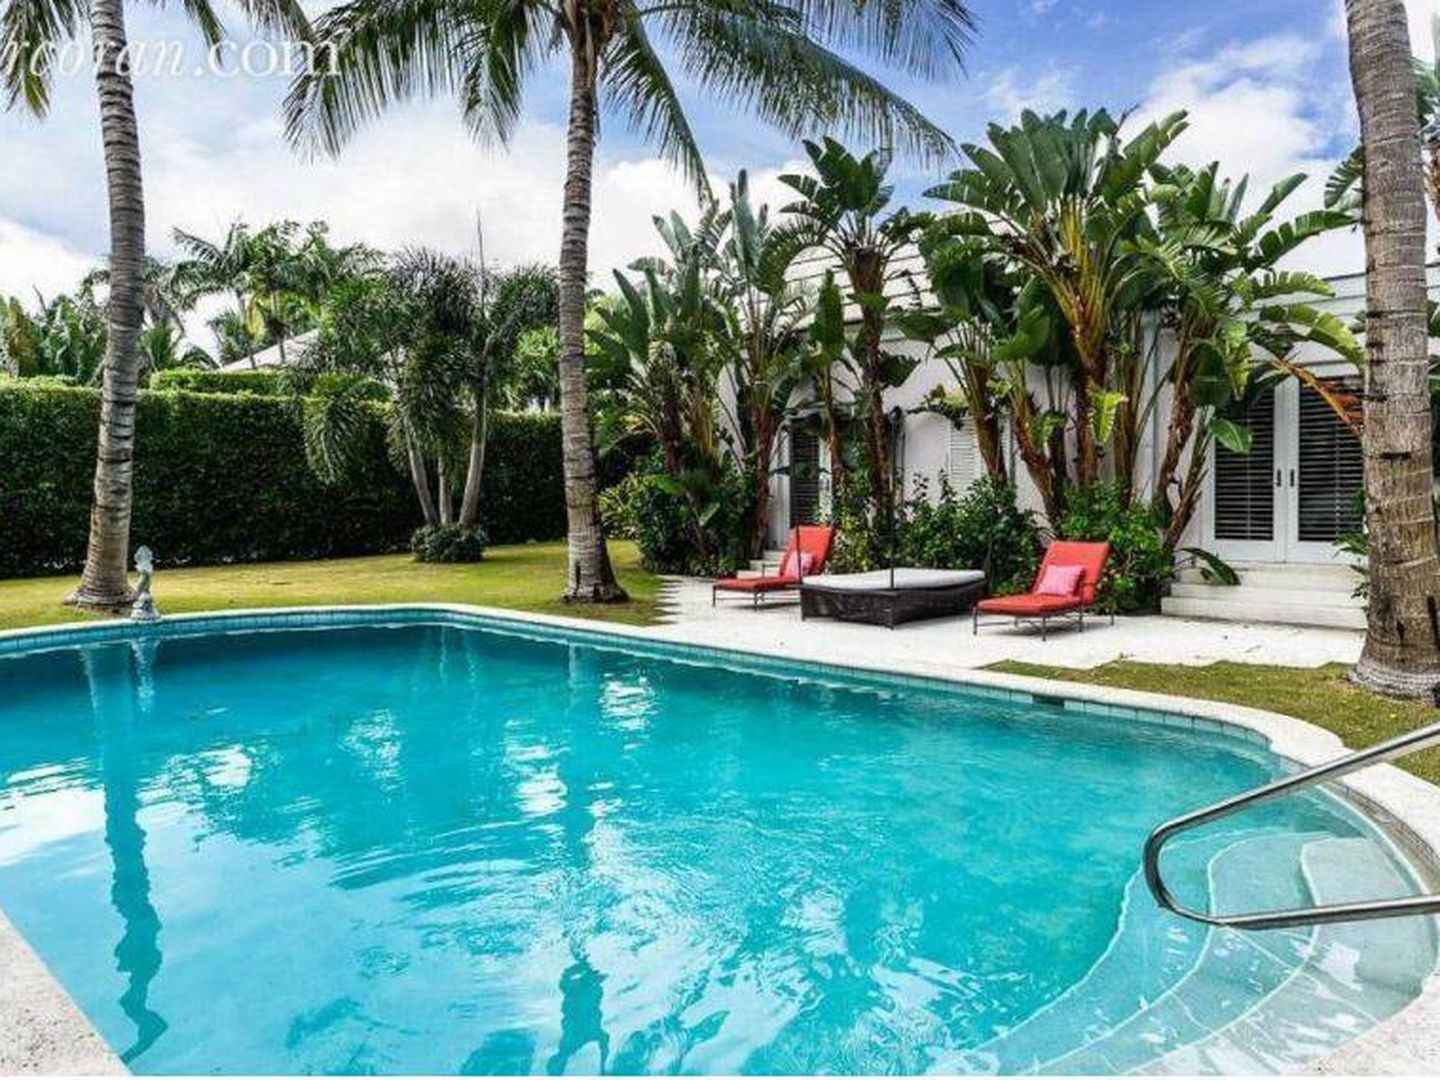 Una de las imágenes de la casa de Florida donde vivirán Magdalena y Chris O'Neill. (Corcoran.com)